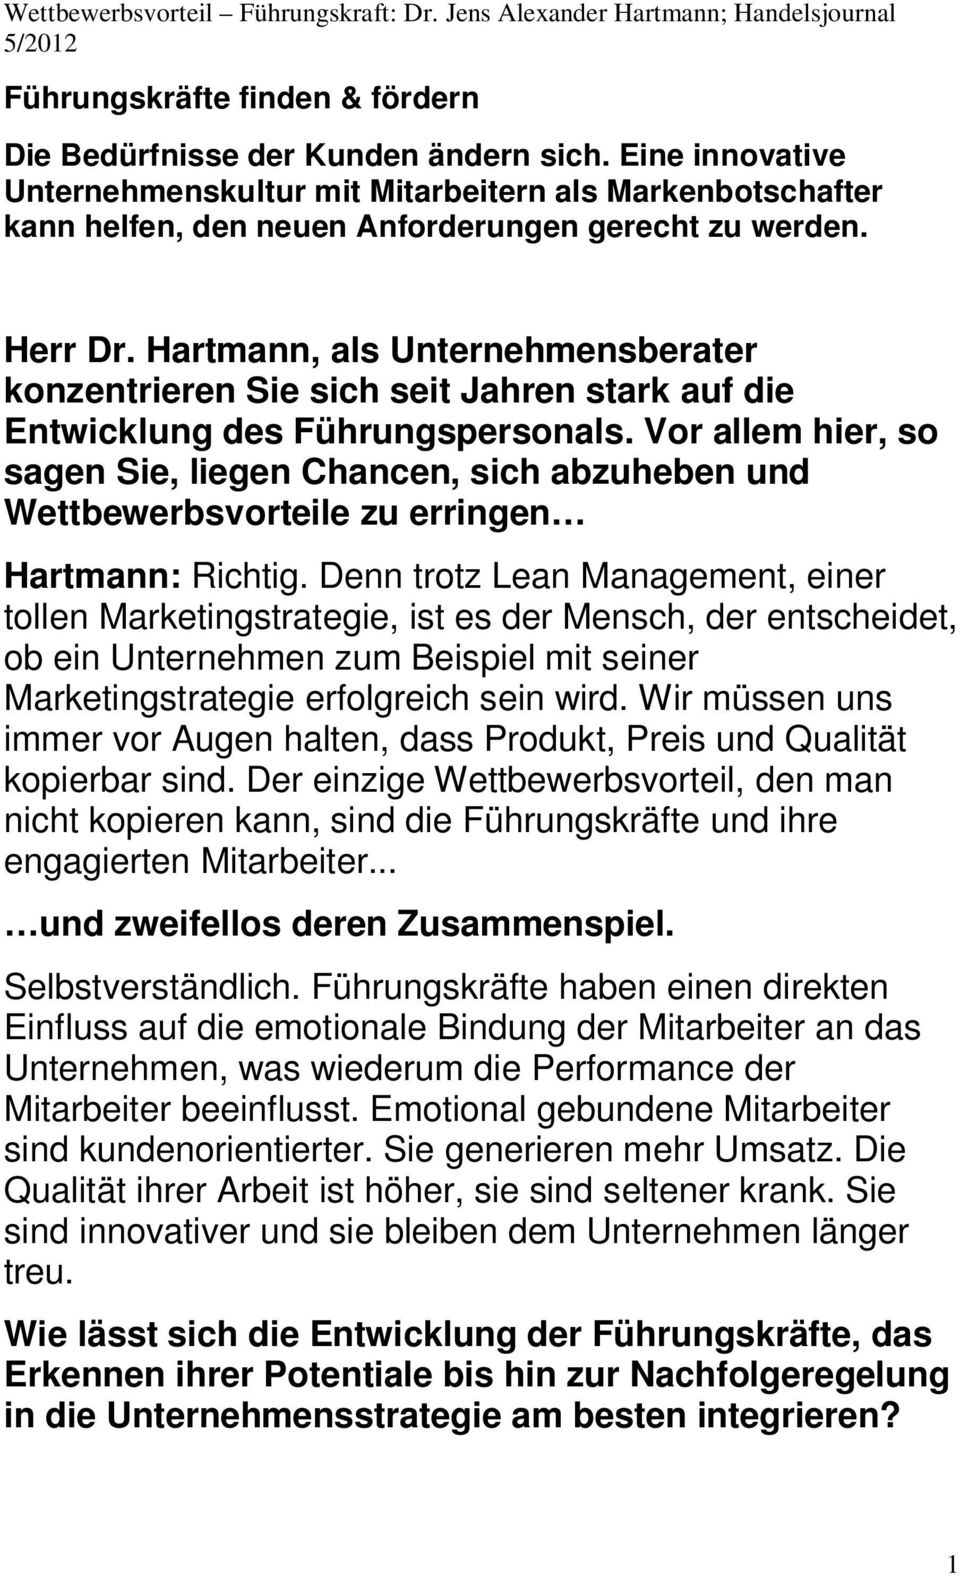 Hartmann, als Unternehmensberater konzentrieren Sie sich seit Jahren stark auf die Entwicklung des Führungspersonals.